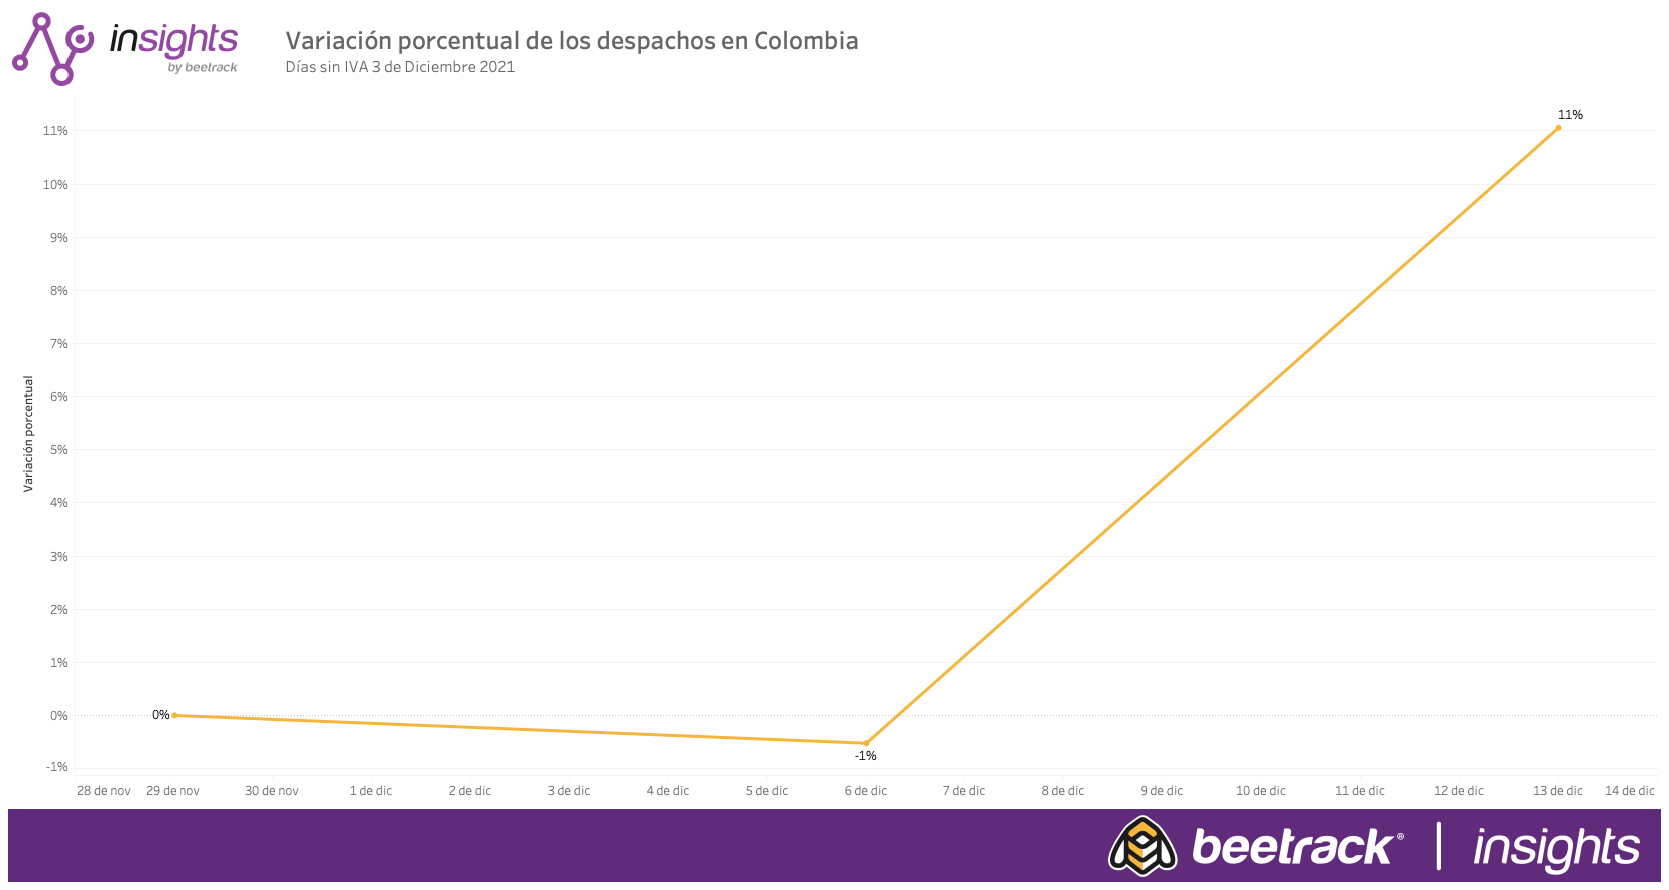 Días sin IVA en Colombia: Cómo impactó en clientes del retail